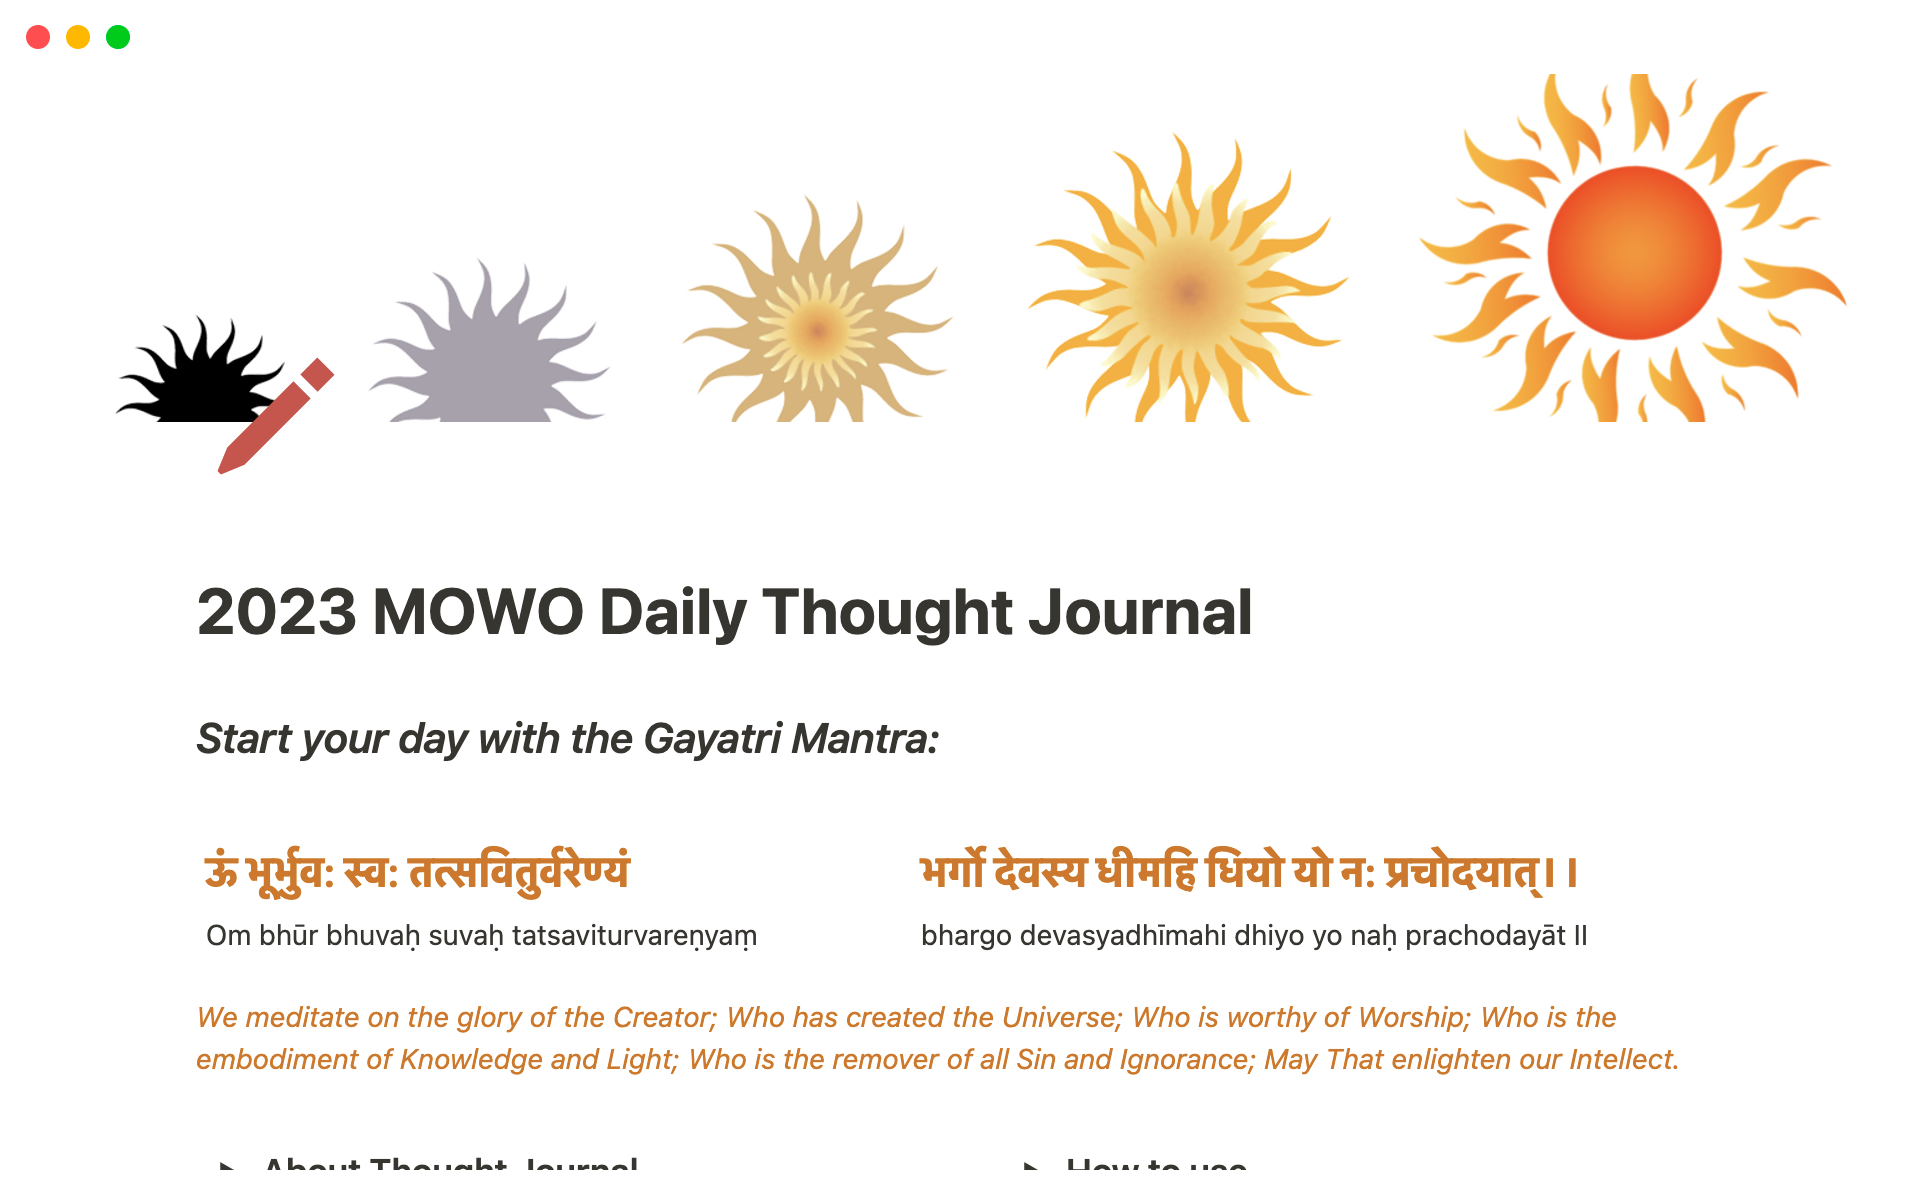 En förhandsgranskning av mallen för 2023 MOWO Daily Thought Journal